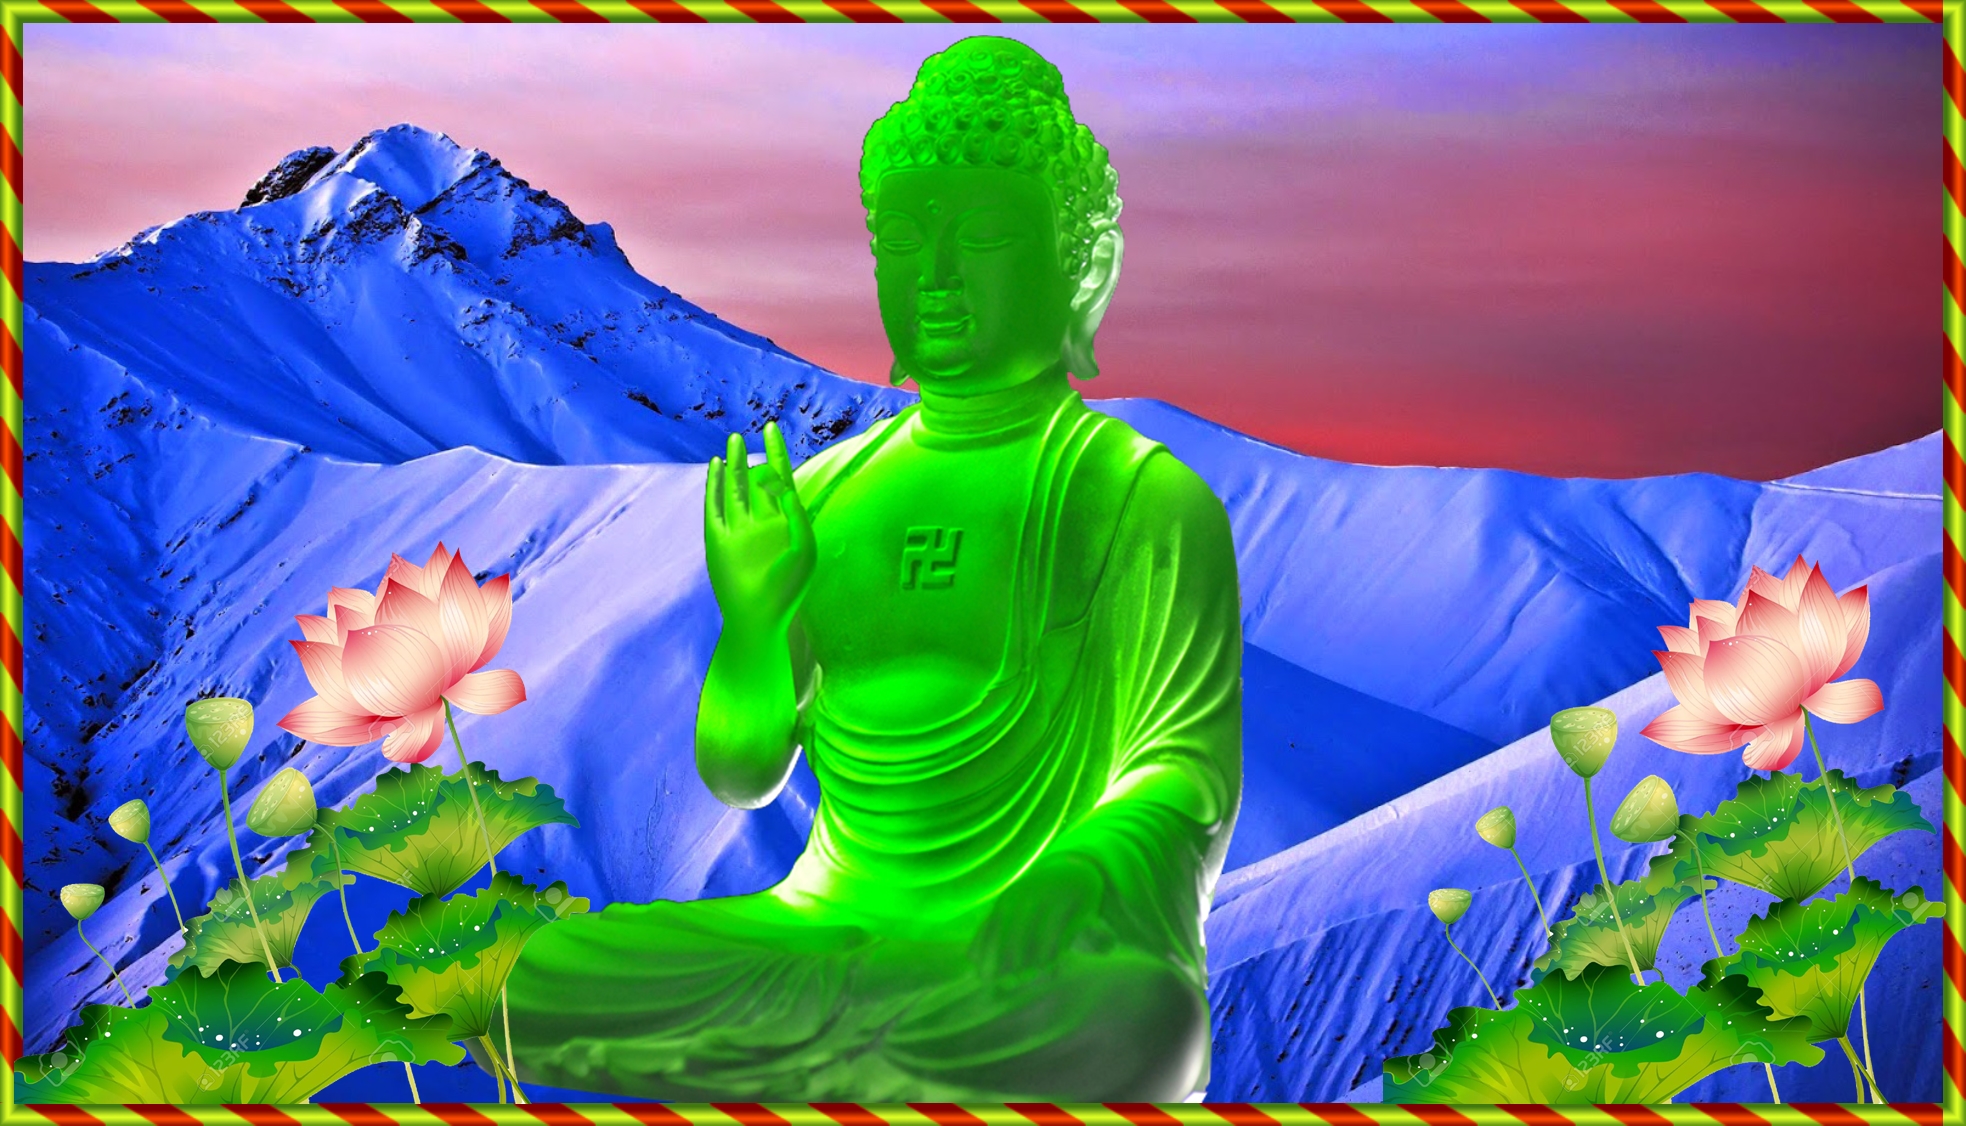 Hình nền Phật đẹp: Cùng truyền tải thông điệp của Phật tới mọi người với hình nền Phật đẹp. Tự động kết nối với tâm hồn thanh tịnh của bạn.